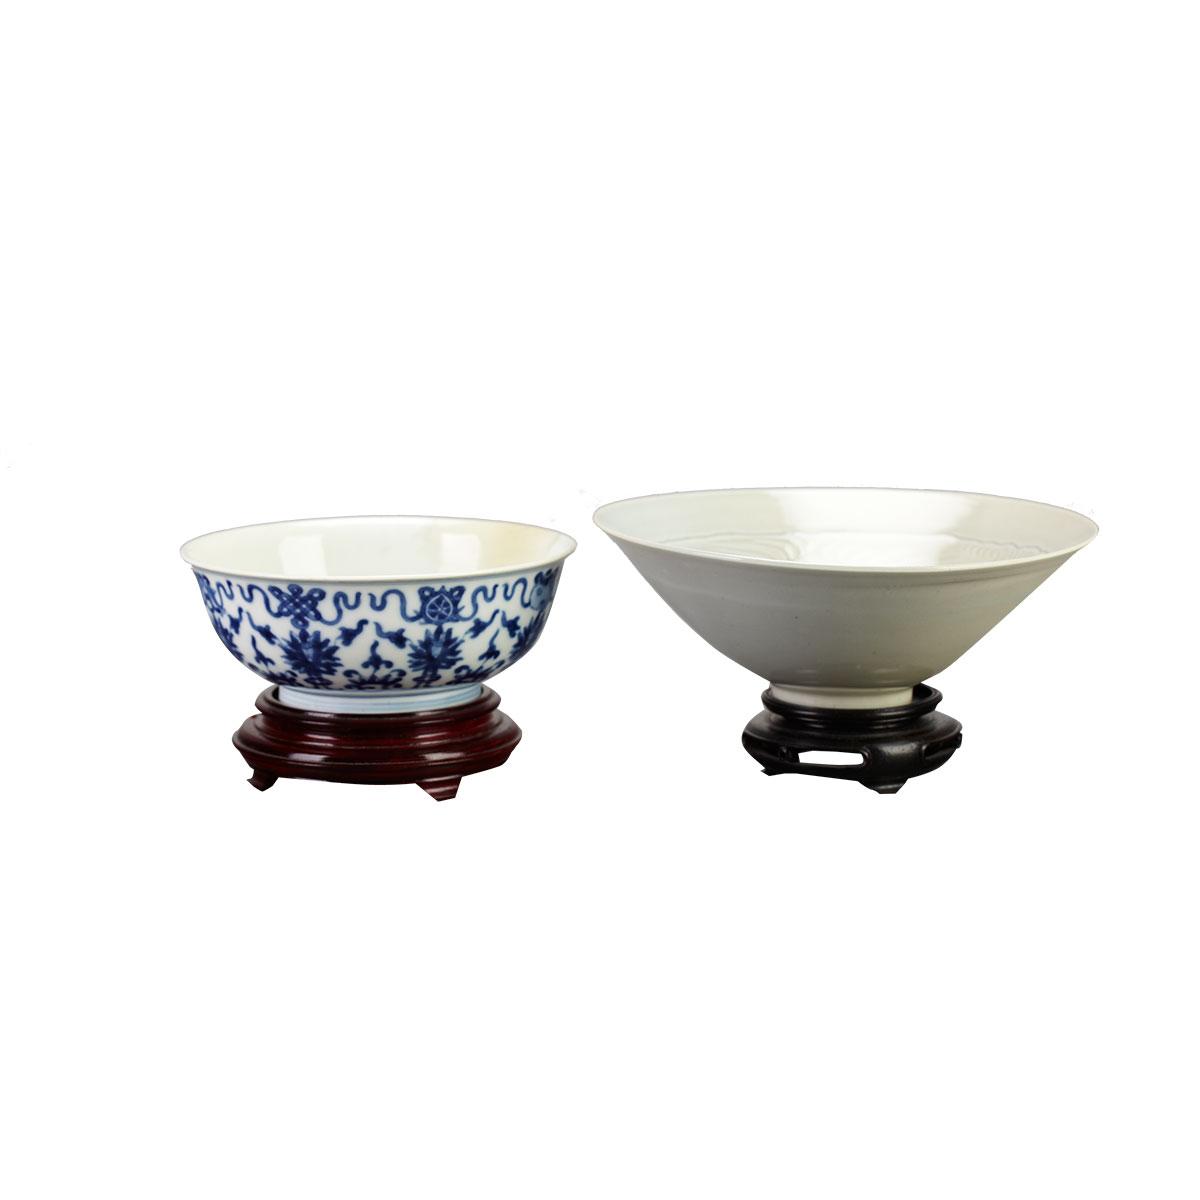 Blue and White ‘Bajixiang’ Bowl, Yongzheng Mark and Period (1723-1735)